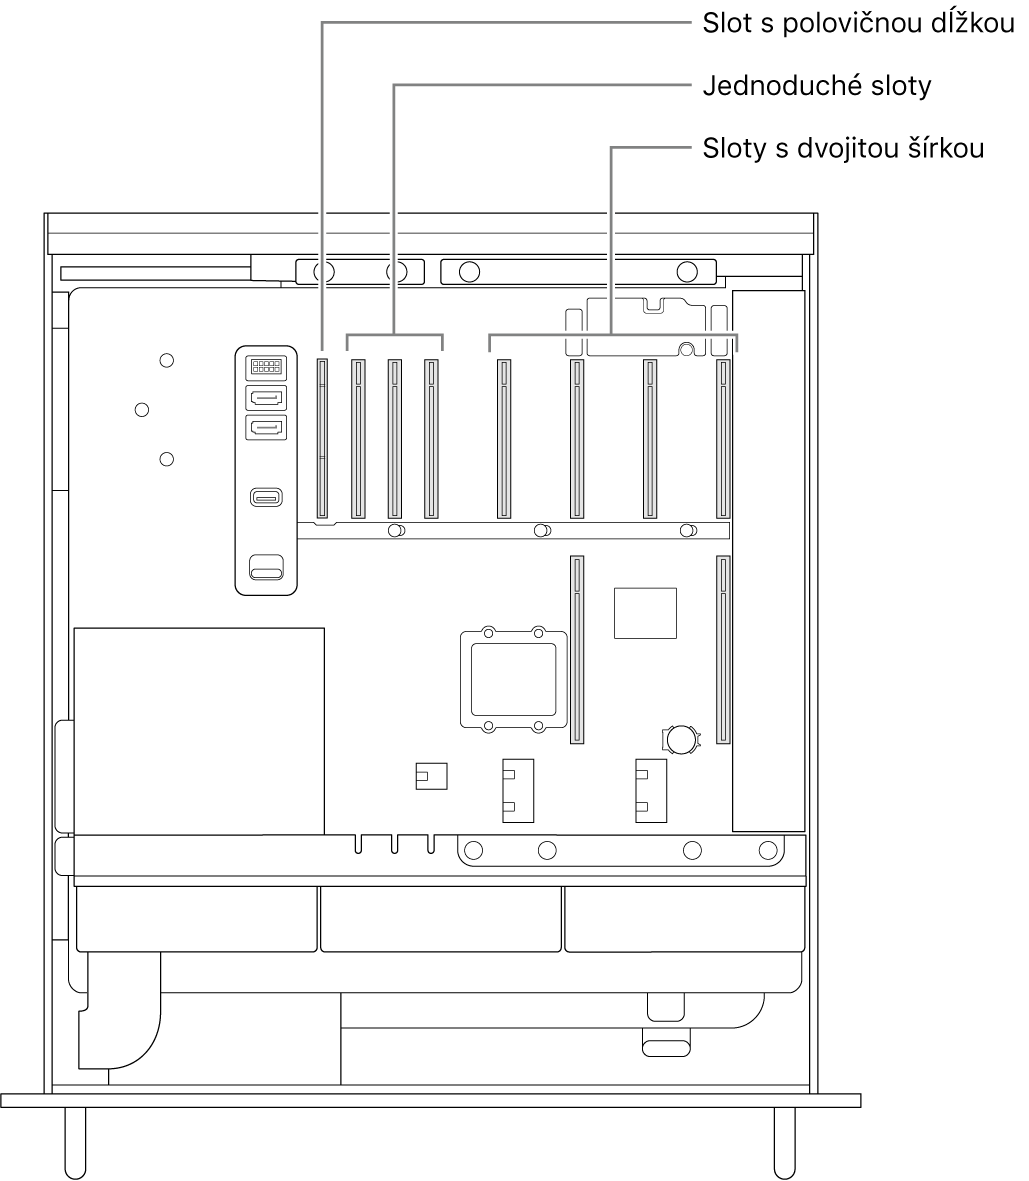 Otvorený Mac Pro zboku s popismi znázorňujúcimi, kde sa nachádzajú štyri sloty s dvojnásobnou šírkou, tri jednoduché sloty a slot s polovičnou dĺžkou.